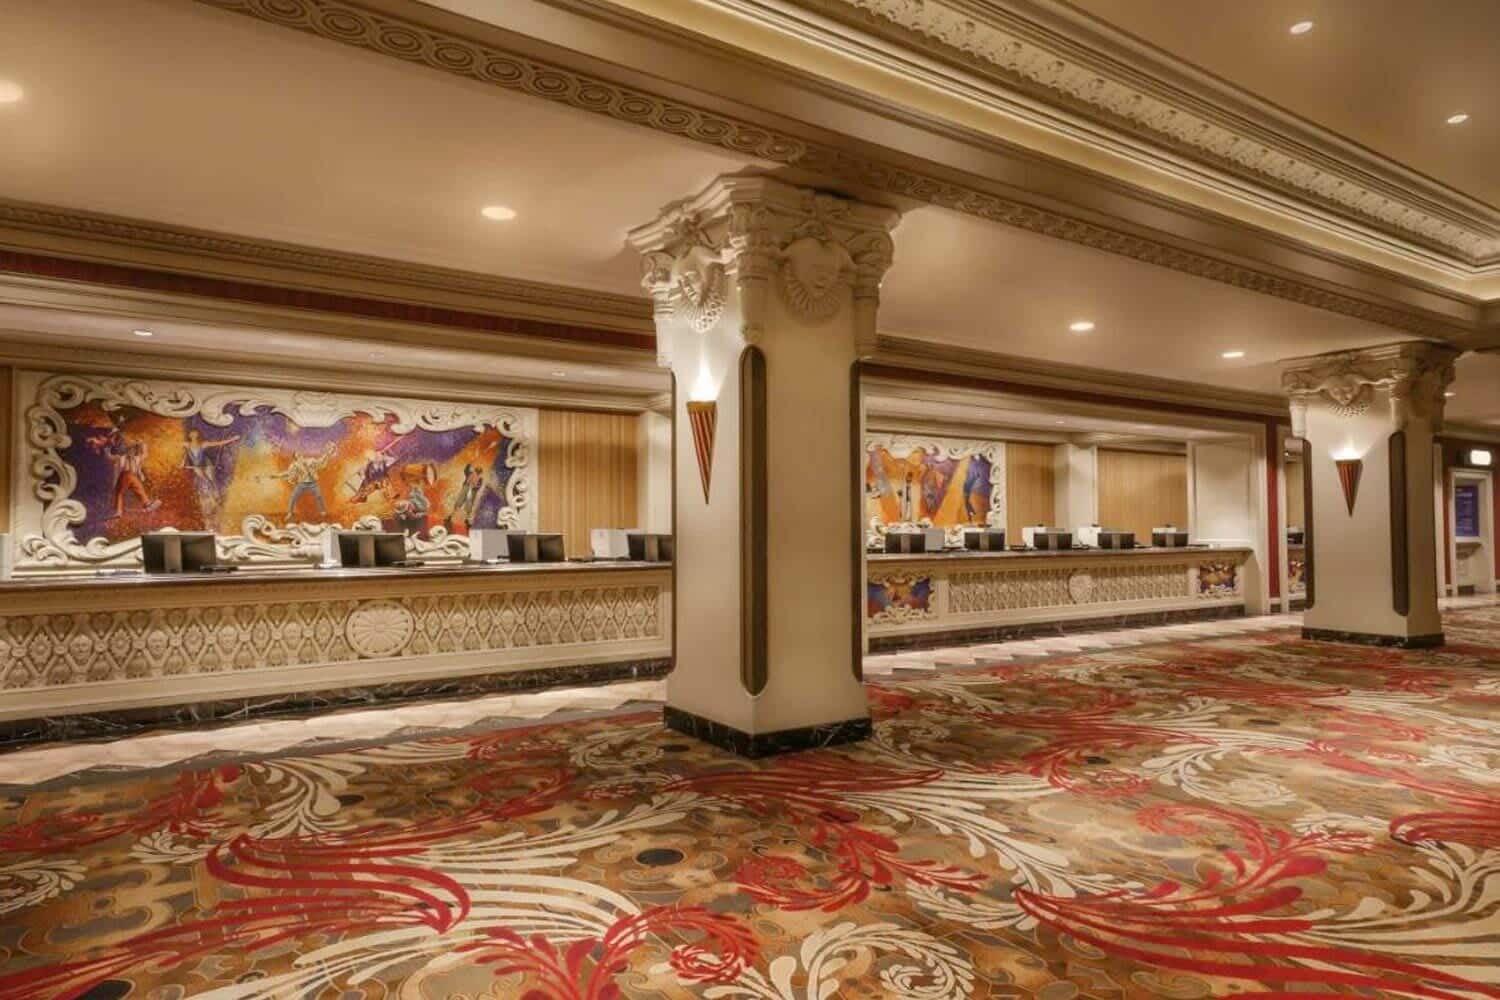 Riviera Hotel & Casino Lobby, Las Vegas, NV